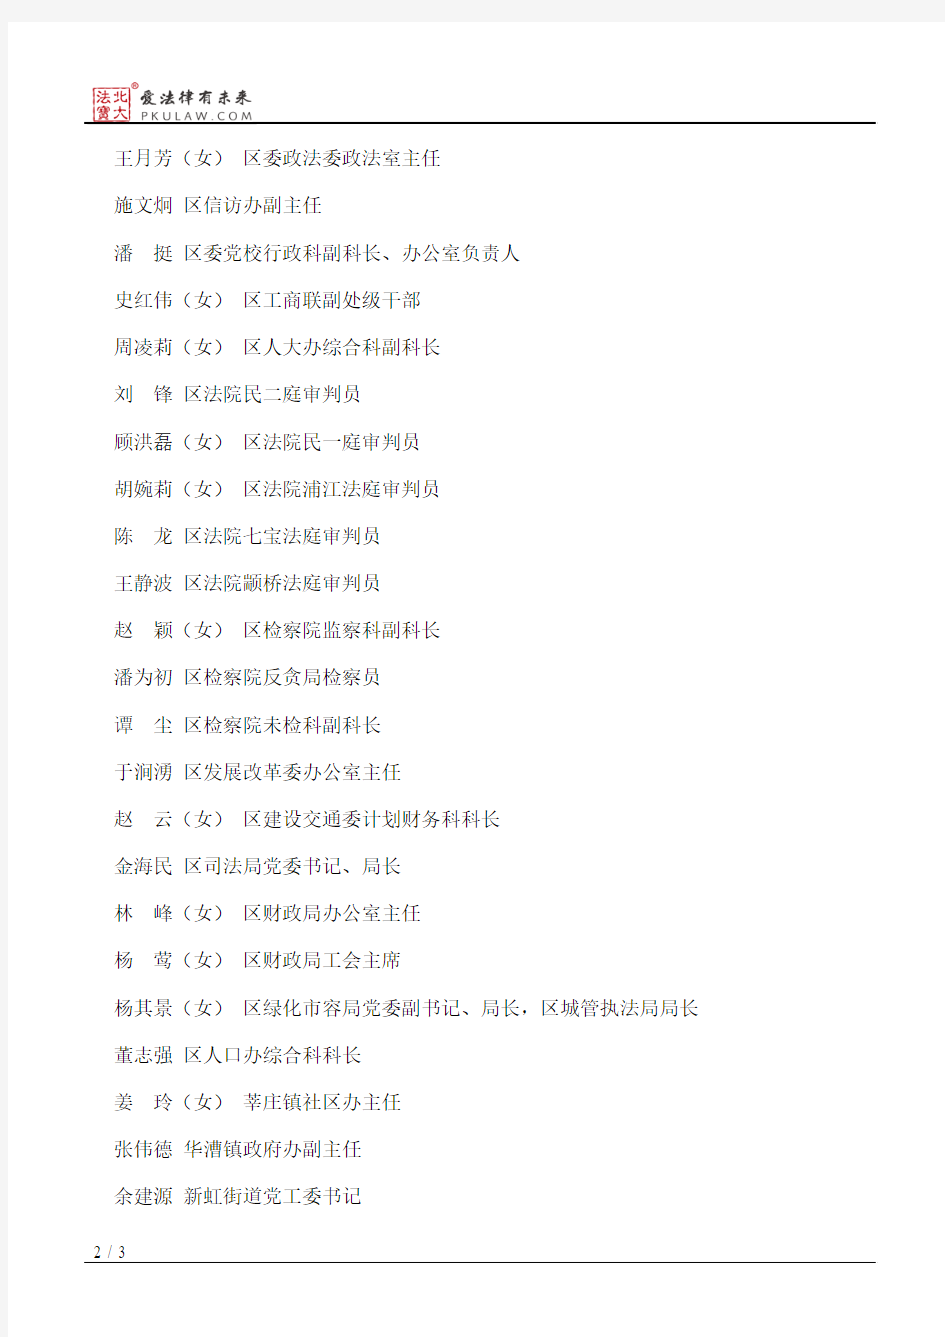 上海市闵行区人民政府关于给予朱国兰等191名同志2012年度行政奖励的决定